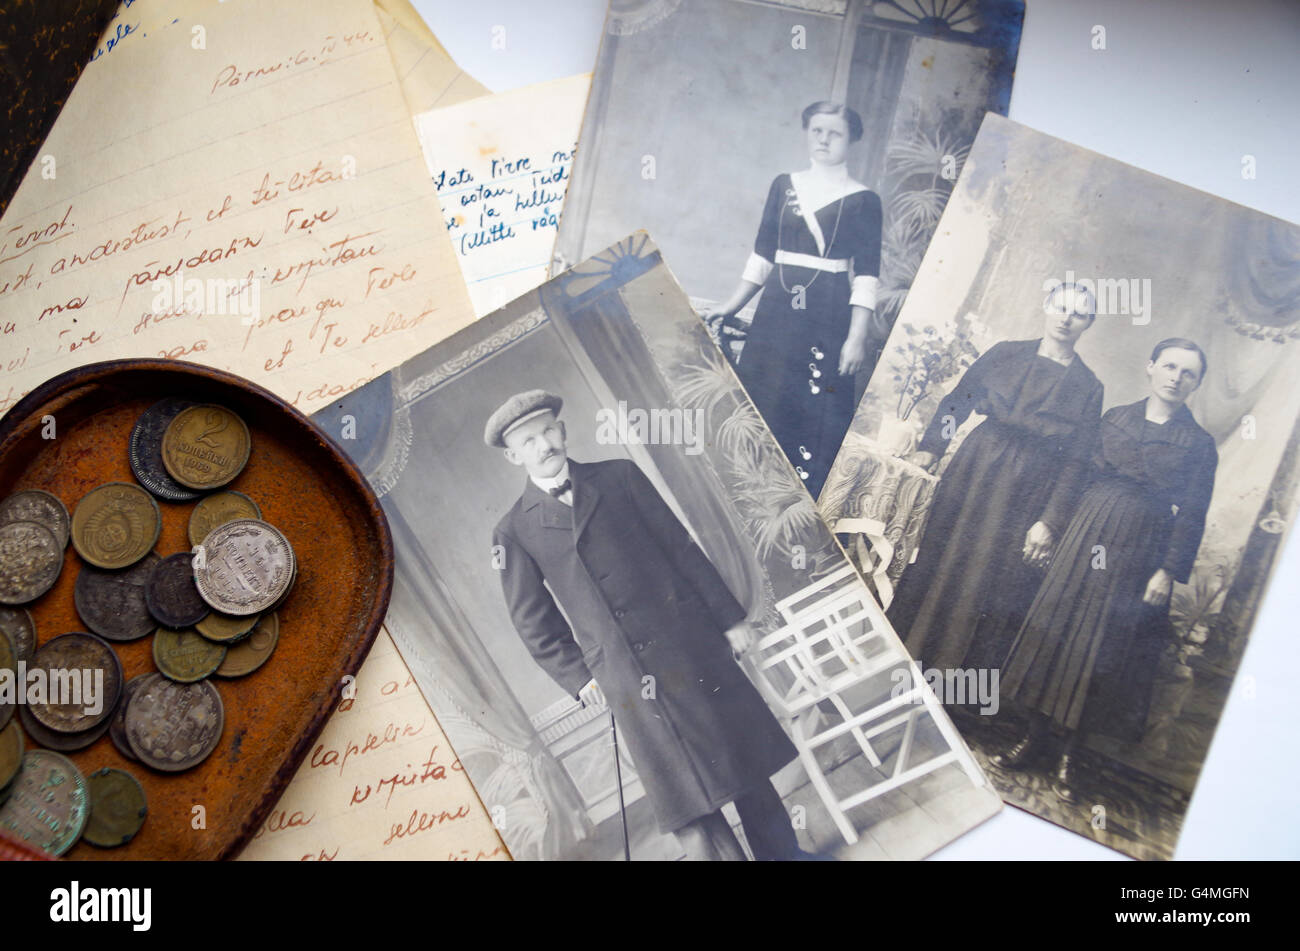 Alte Münzen aus dem russischen Reich, handgeschriebene Liebesbriefe aus der 2. Weltkrieg Ära und mehrere alte b&w Familienfotos Stockfoto